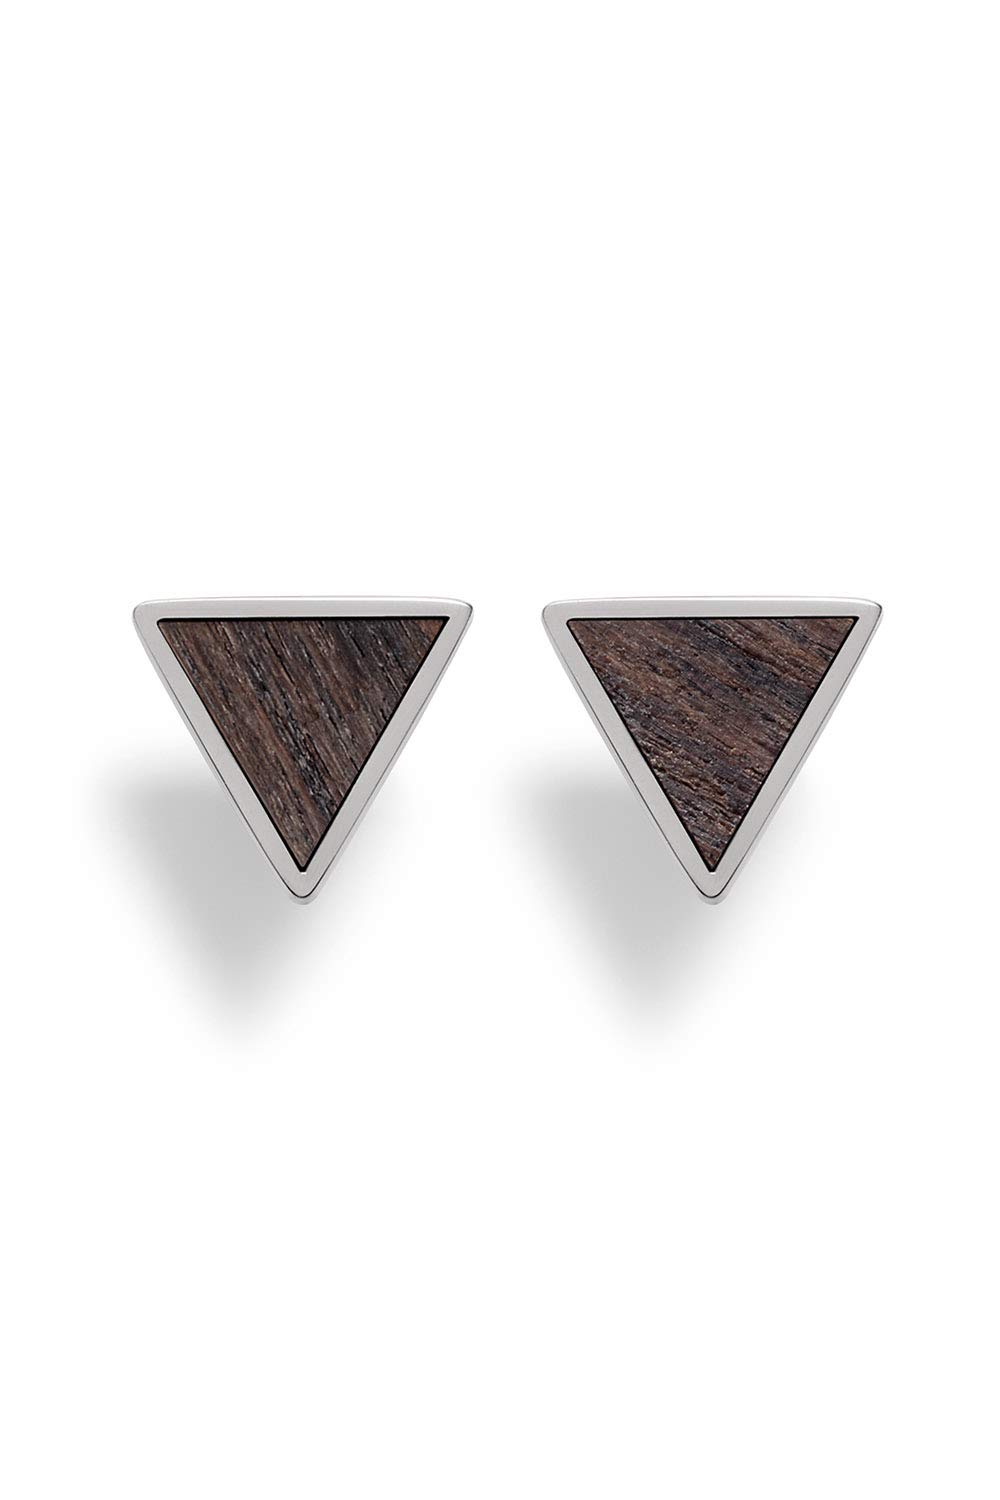 KERBHOLZ Holzschmuck – Geometrics Collection Triangle Earring, Damen Ohrring geometrisch, kleine Ohrstecker mit Dreieck aus Naturholz, silber (8,5mm x 7,5mm)